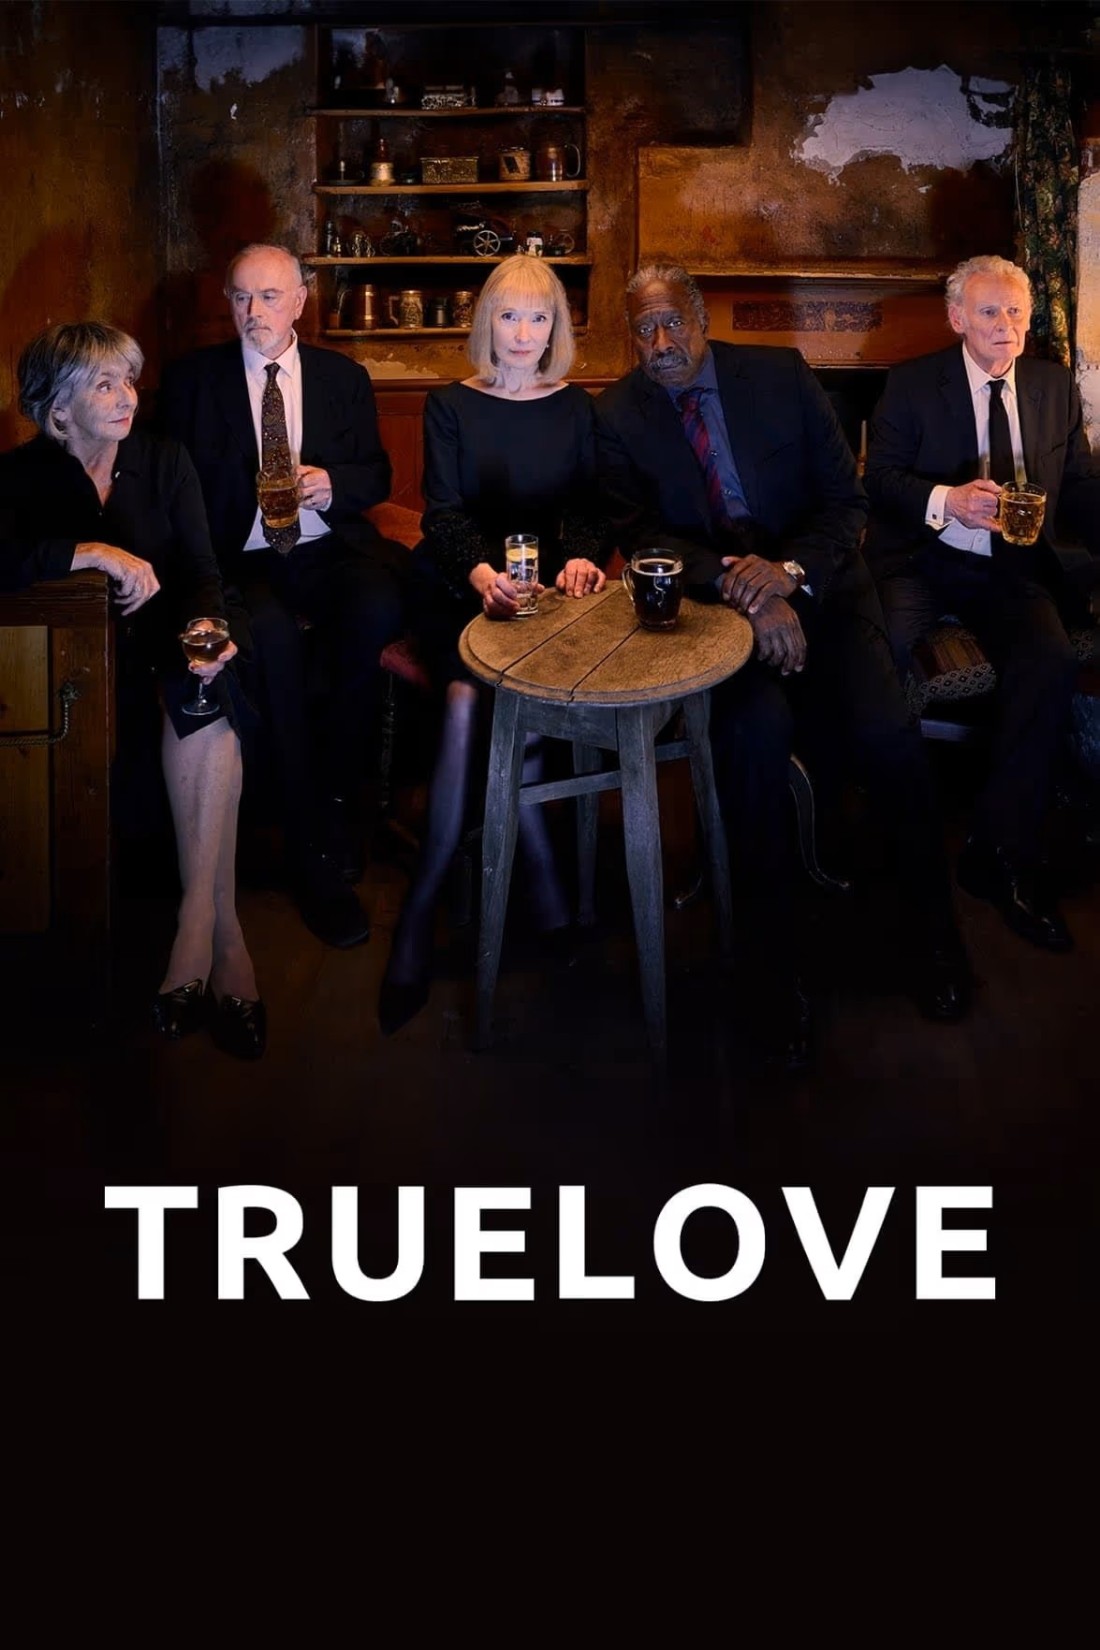 Truelove S01E03 [1080p/720p] WEB-DL (x264) 5f70eb08933db1c64a84b350553e5404